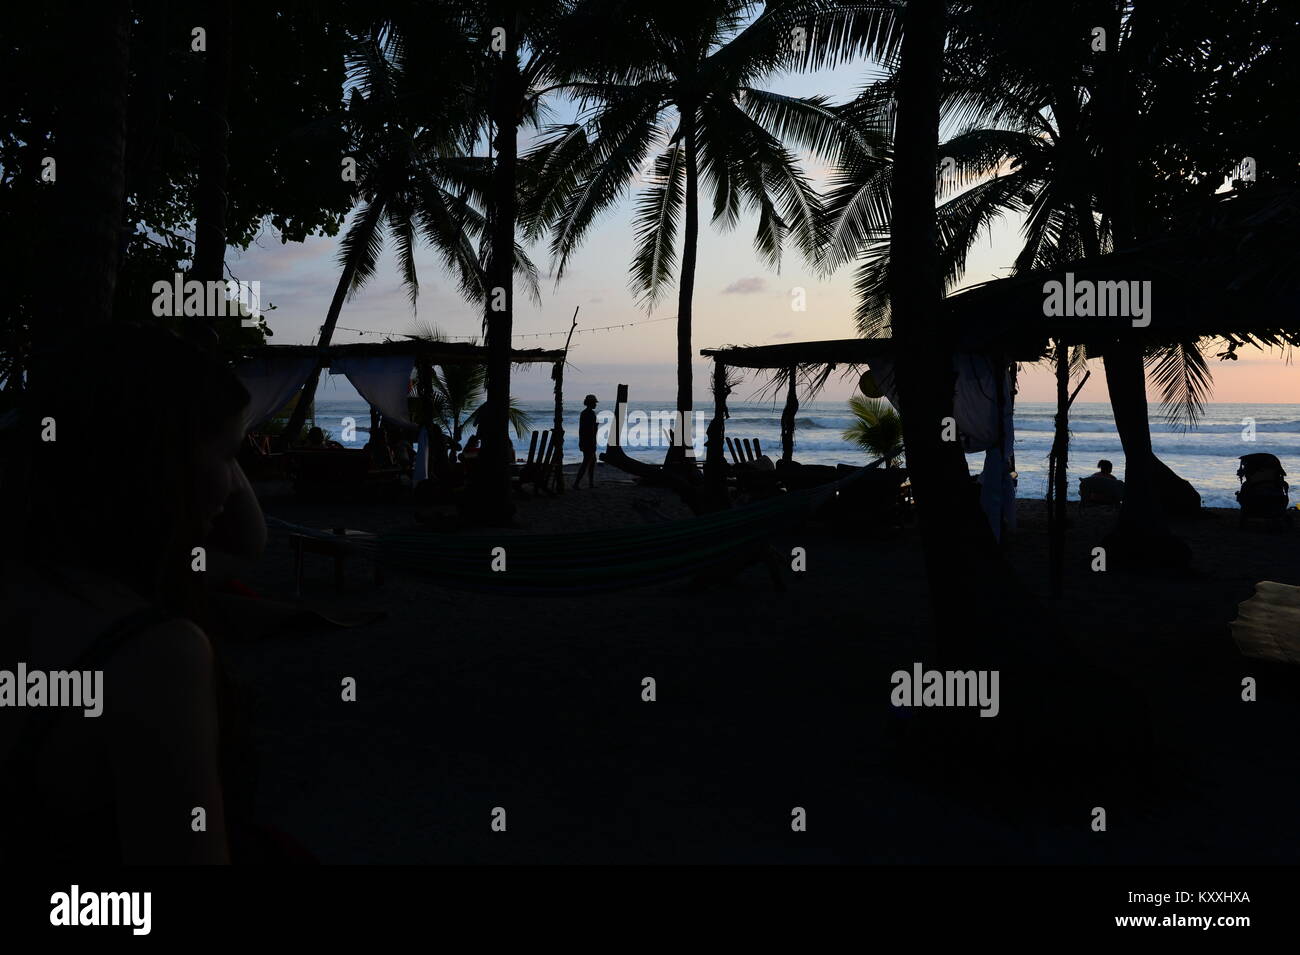 Die Leute, um den Sonnenuntergang von Santa Teresa, die weltweit berühmt ist zu genießen. Kokospalmen stark gegen den Abendhimmel. Stockfoto